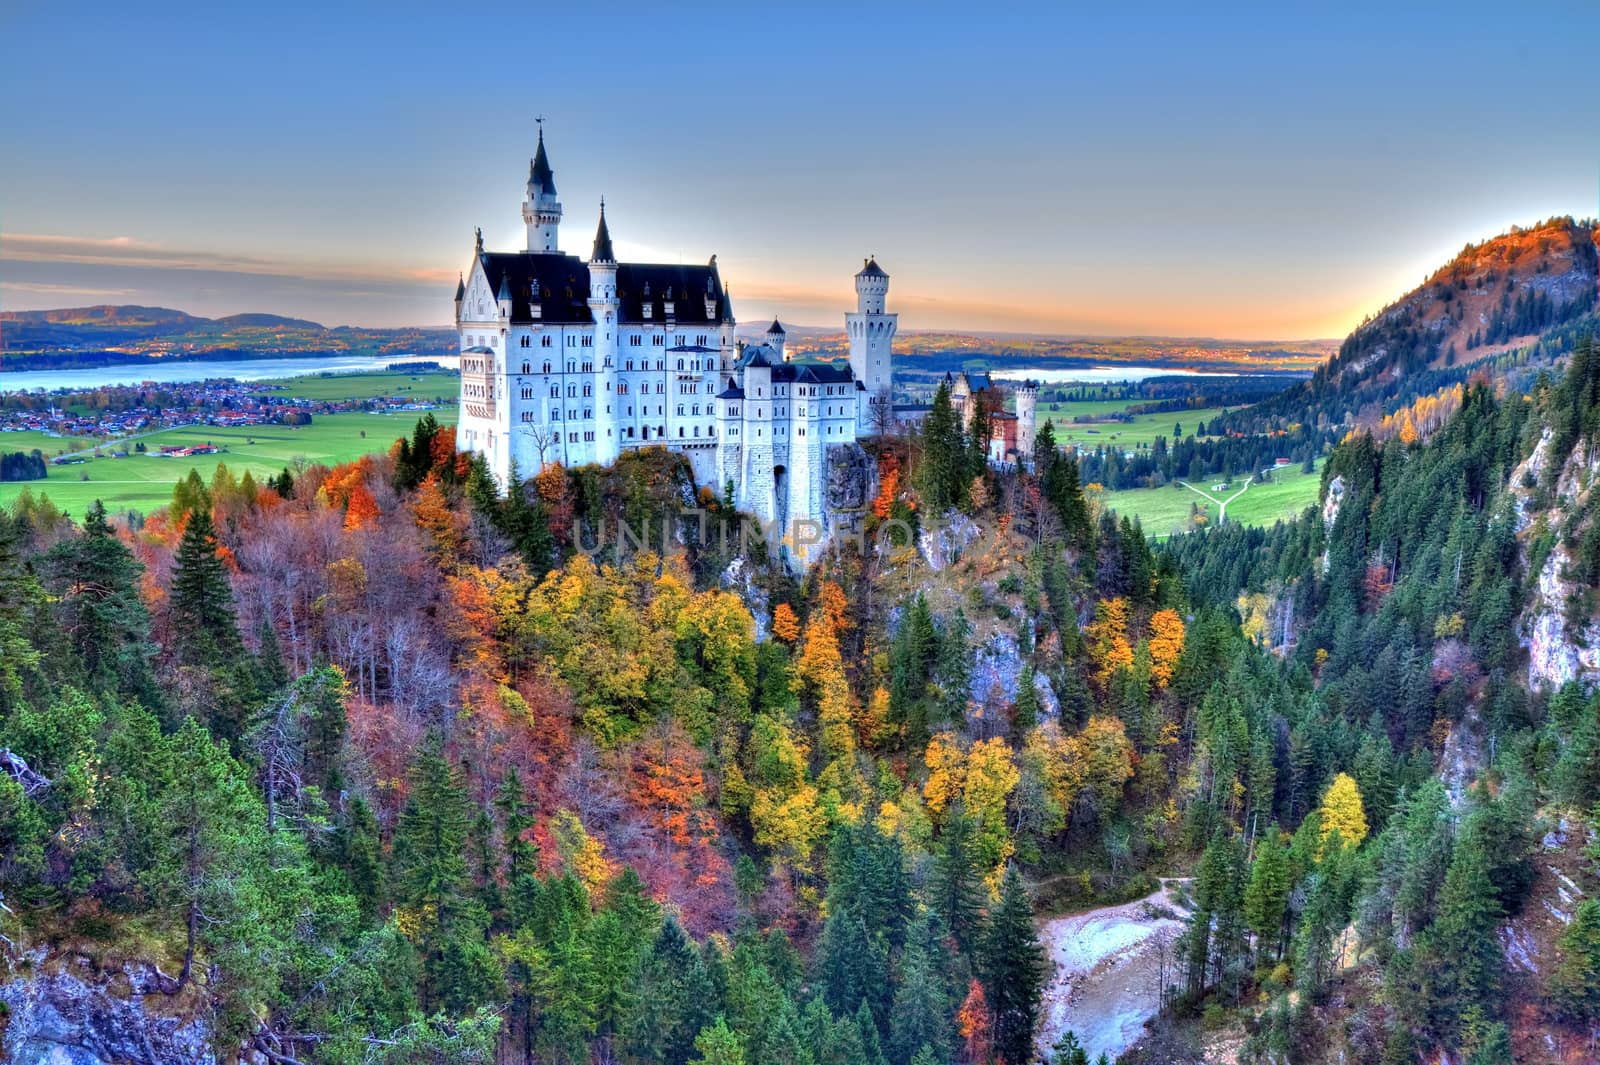 Castle of Neuschwanstein near Munich in Germany on an autumn day